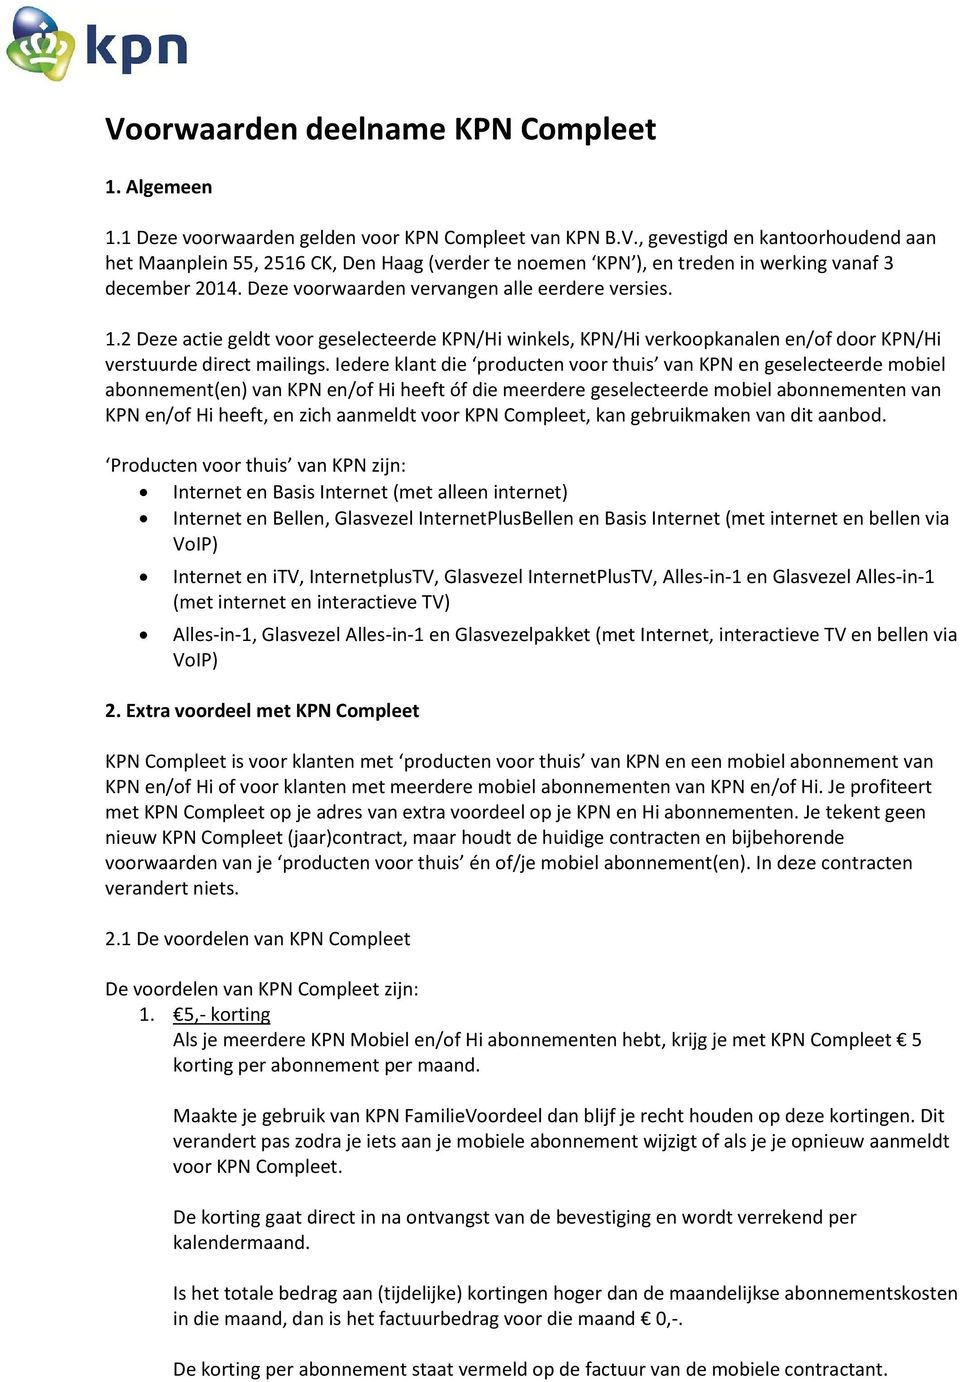 Voorwaarden deelname KPN Compleet - PDF Gratis download